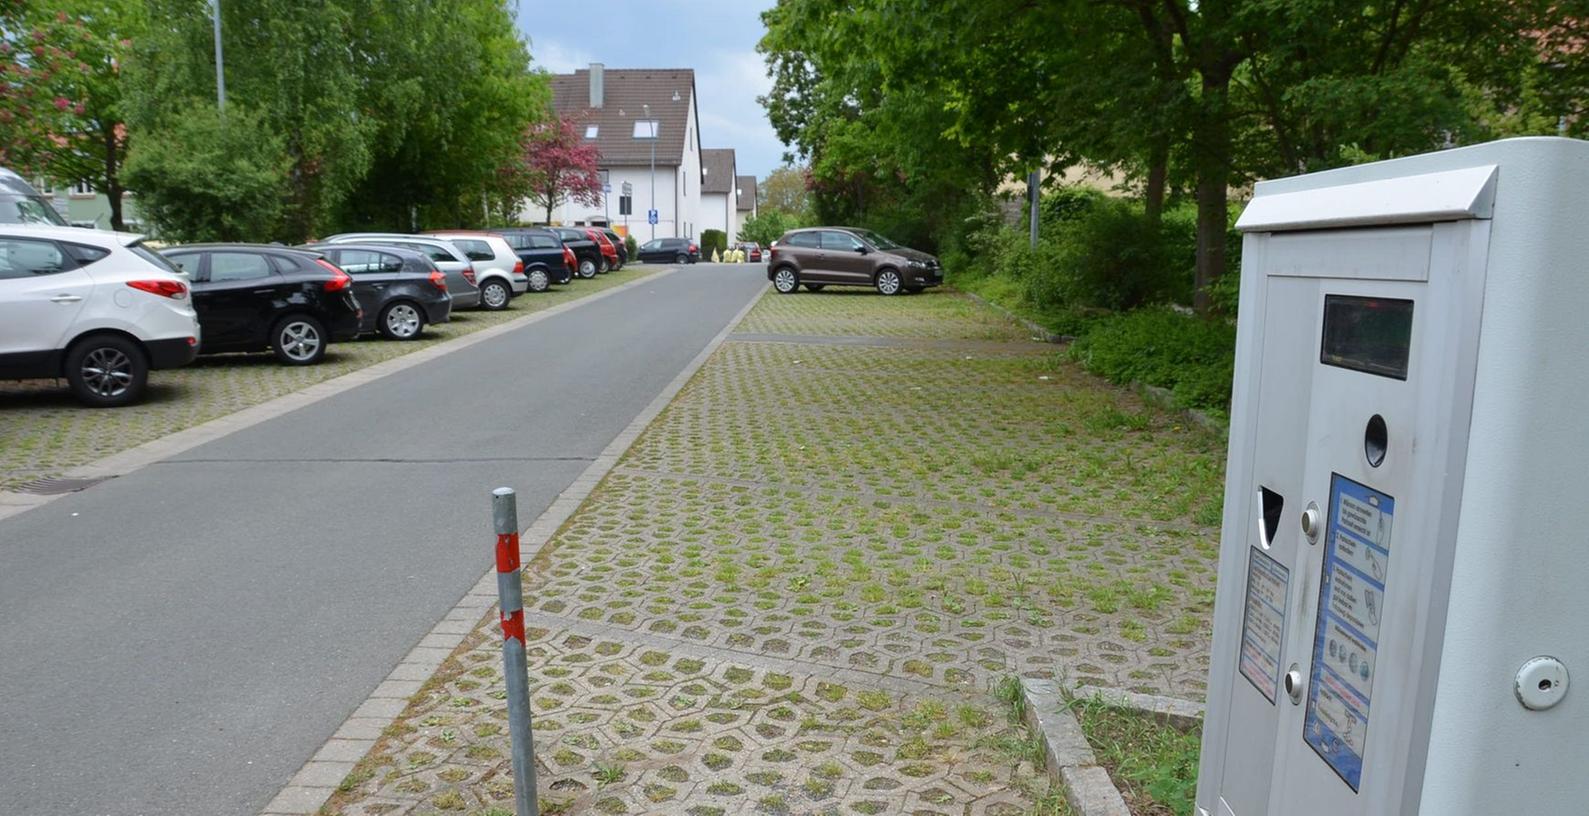 Parken in Schwabach: unschöne Wahrheiten und echte Härten